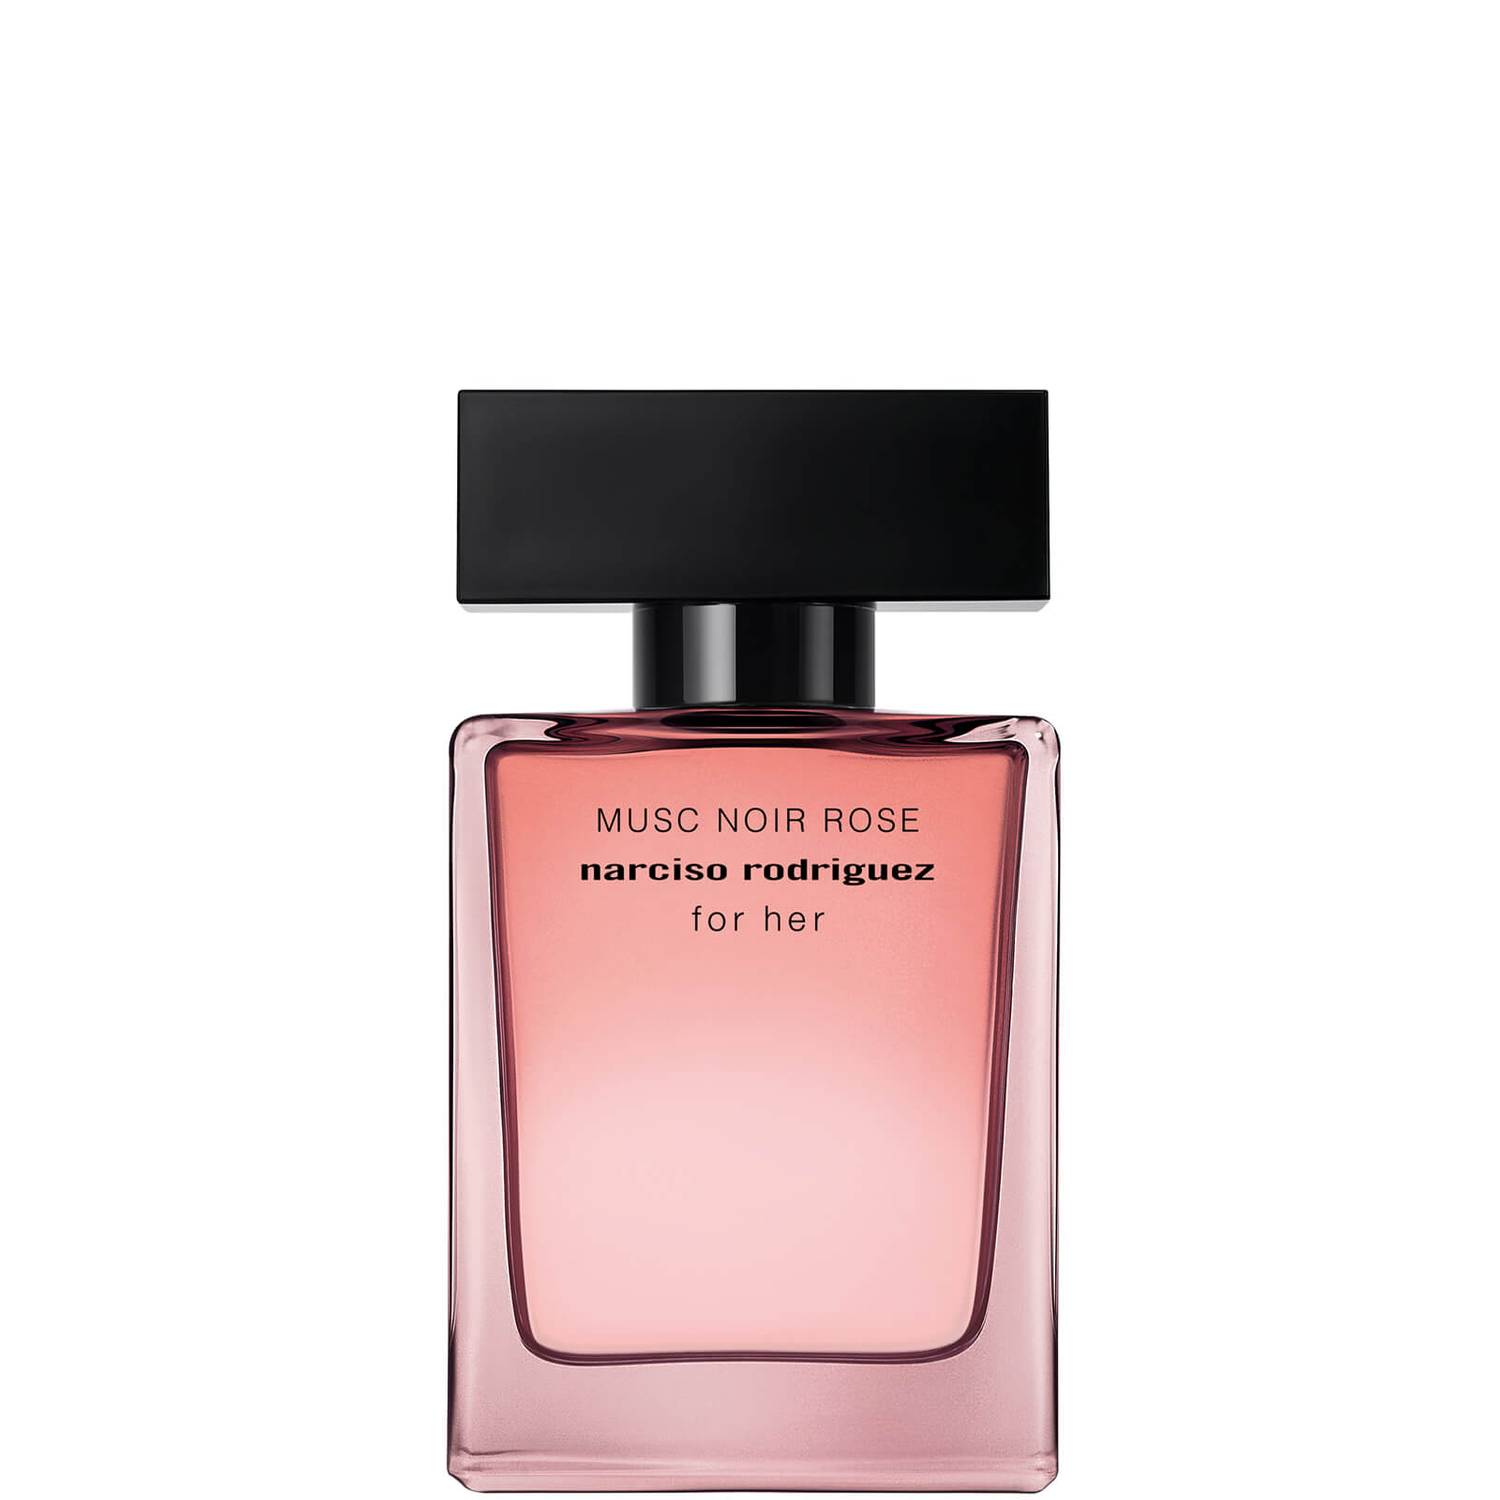 Narciso Rodriguez Musc Noir Rose For Her Eau De Parfum